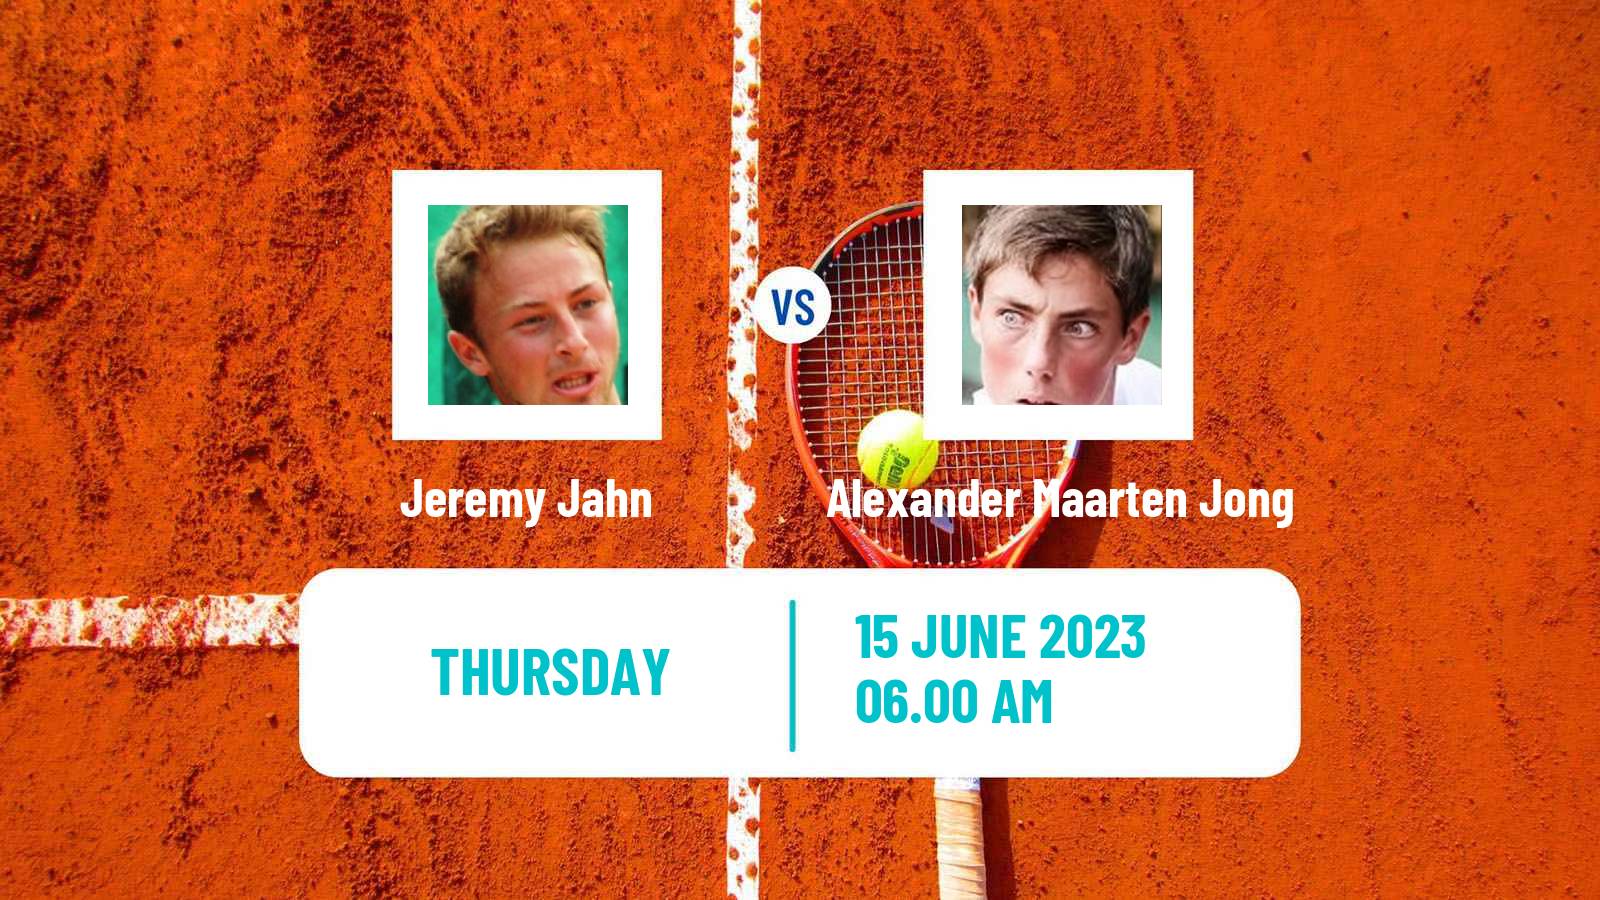 Tennis ITF M15 Duffel Men Jeremy Jahn - Alexander Maarten Jong